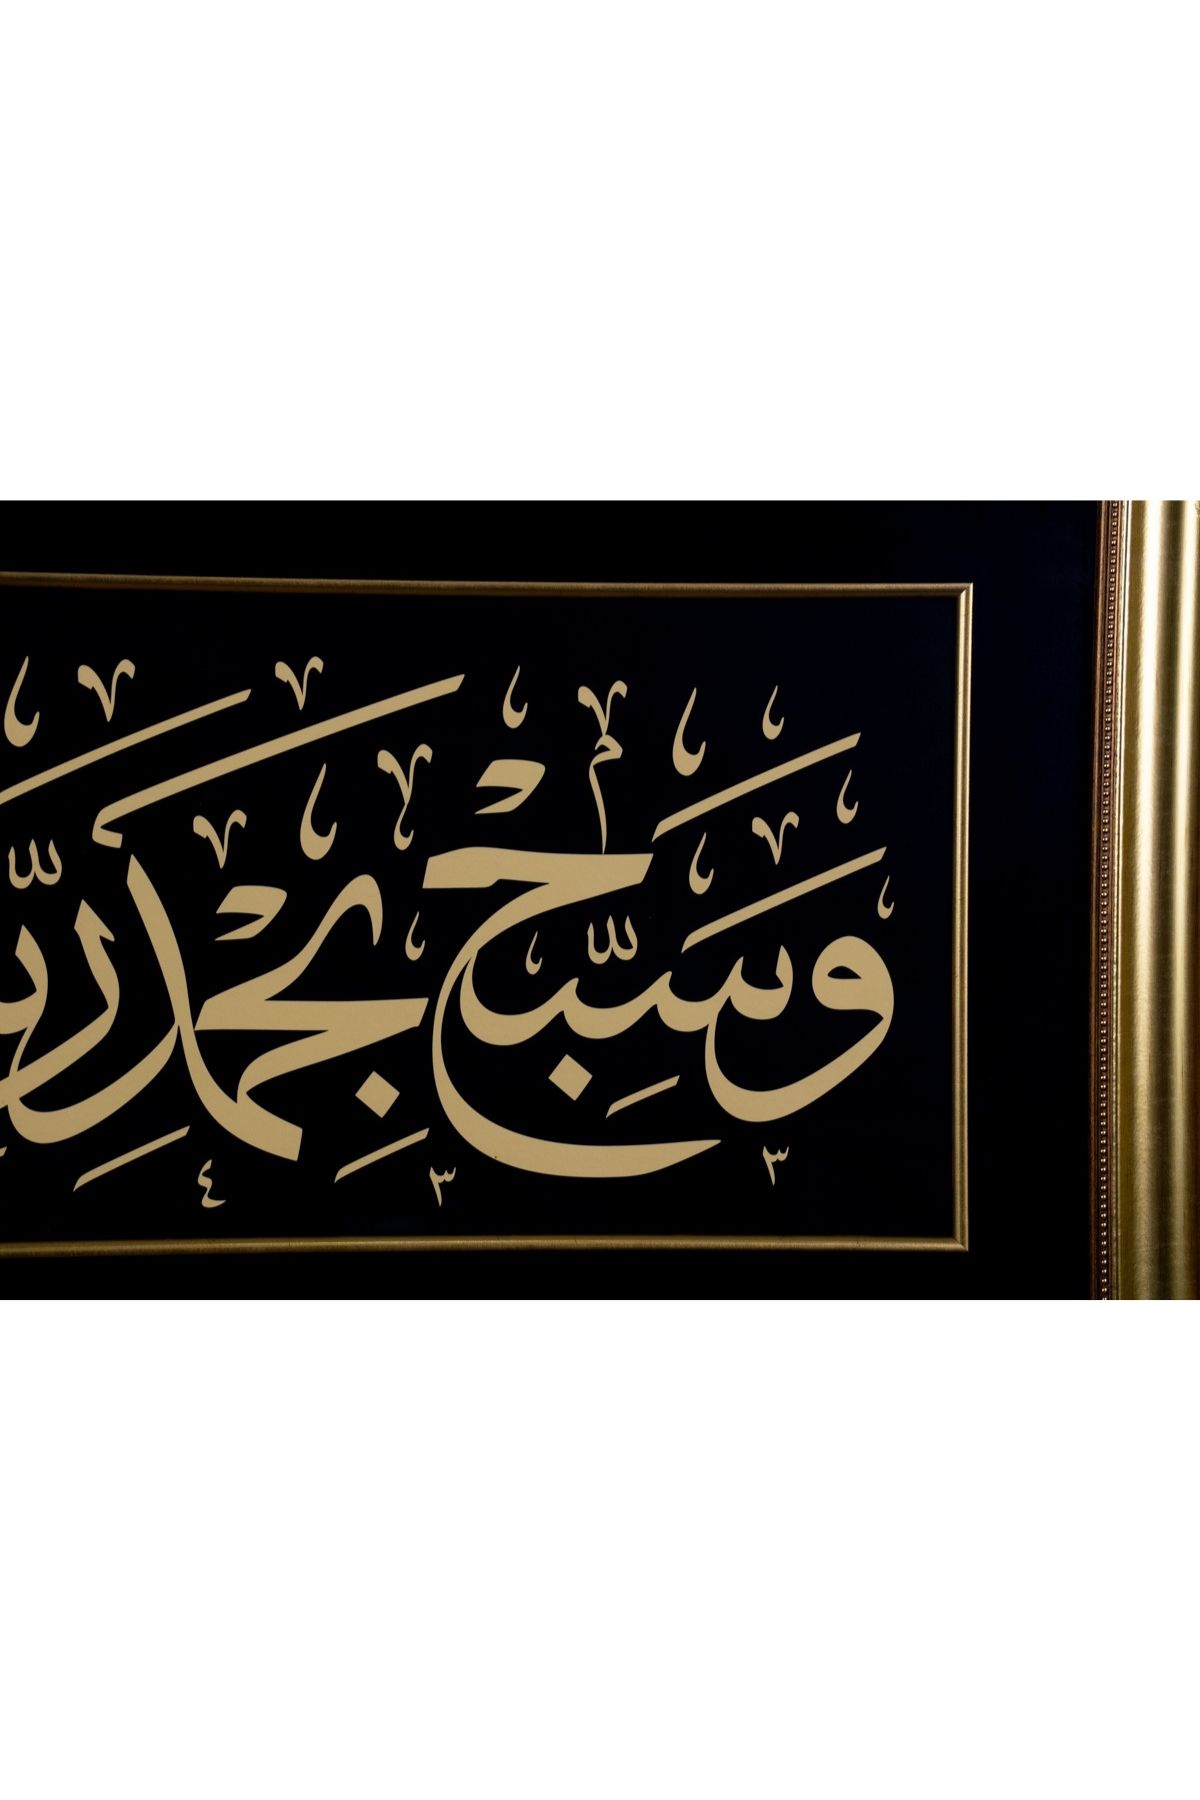 İslami Tablo 56x85 cm Tıpkı Basım Hat Sanatı Dekoratif Çerçeveli ’’Vesebbih Bihamdi Rabbike’’